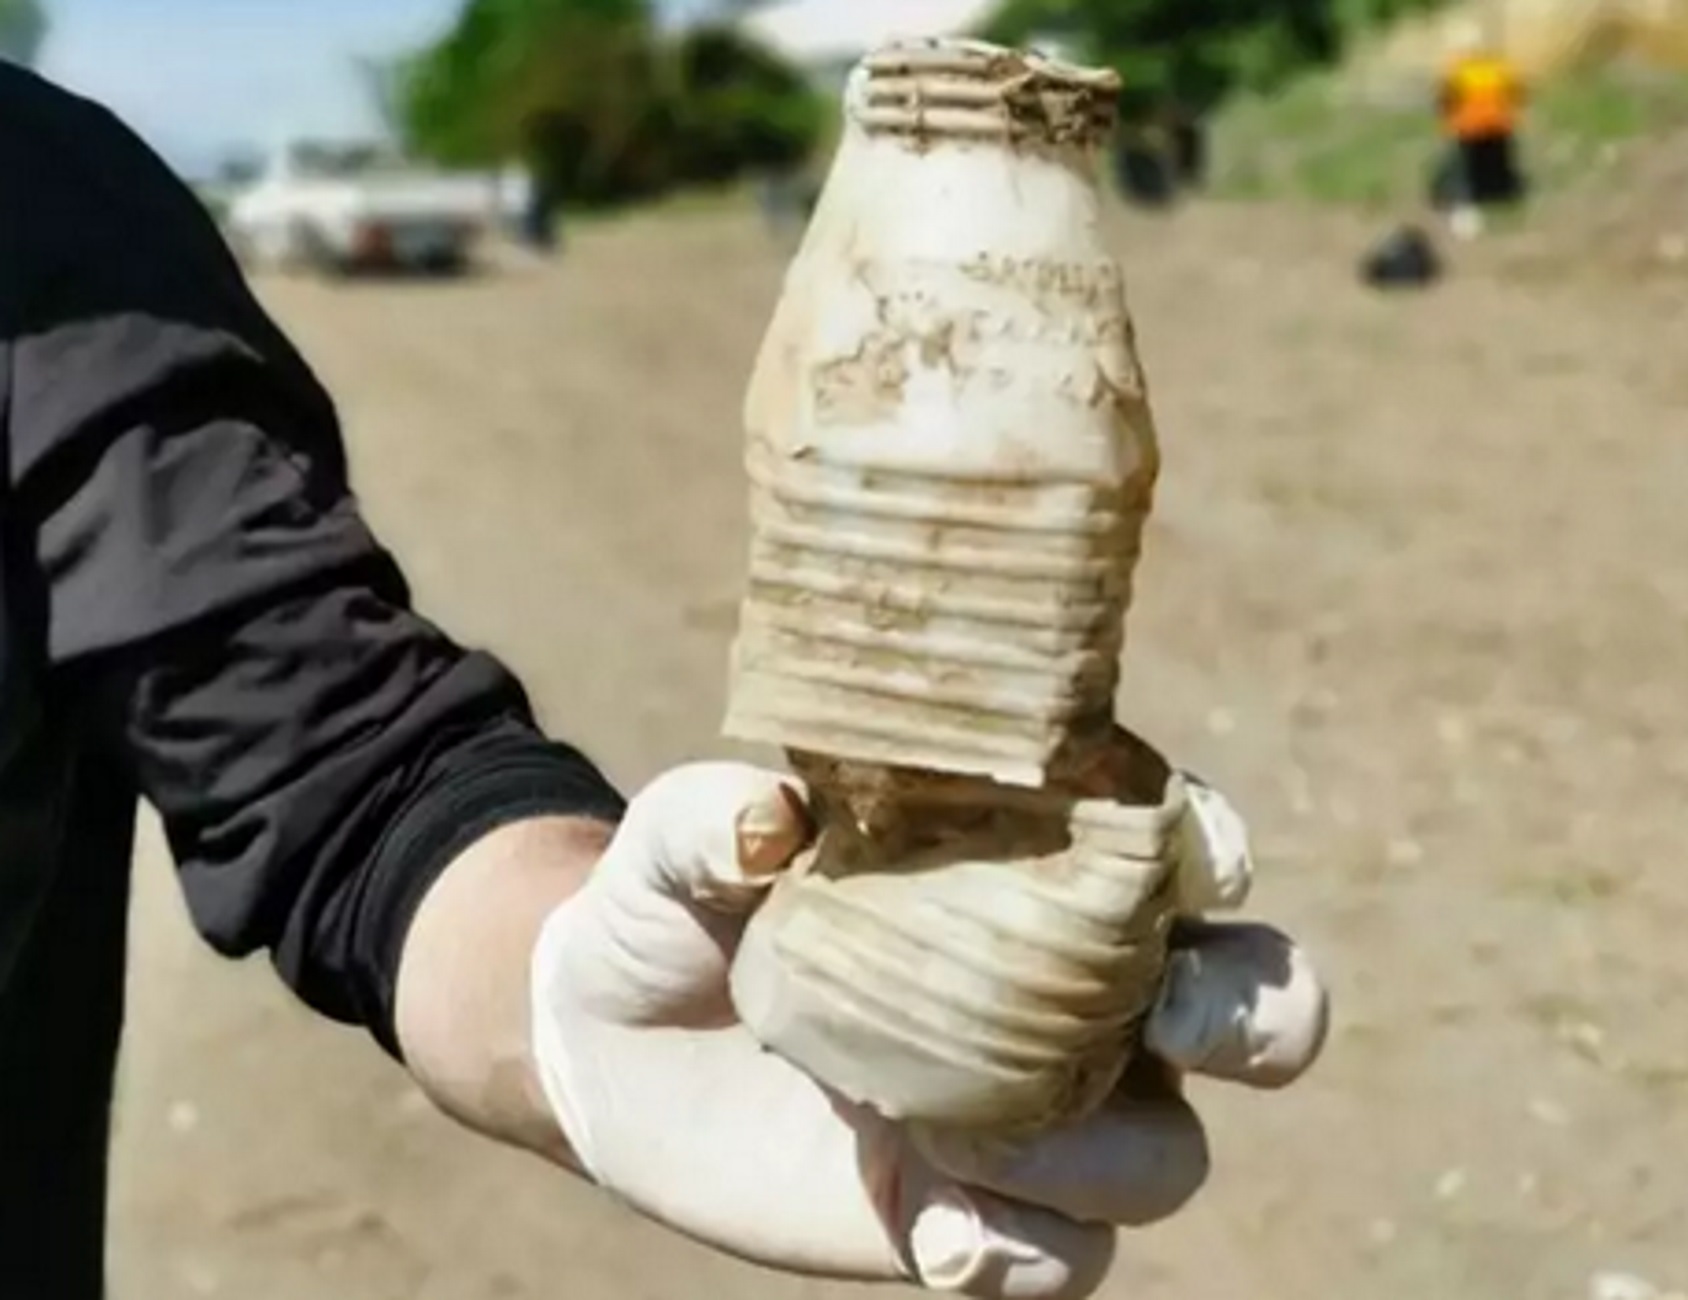 Χαλκιδική: Έριξαν πλαστικό μπουκάλι σε παραλία και 40 χρόνια μετά το βρήκαν πάλι μπροστά τους